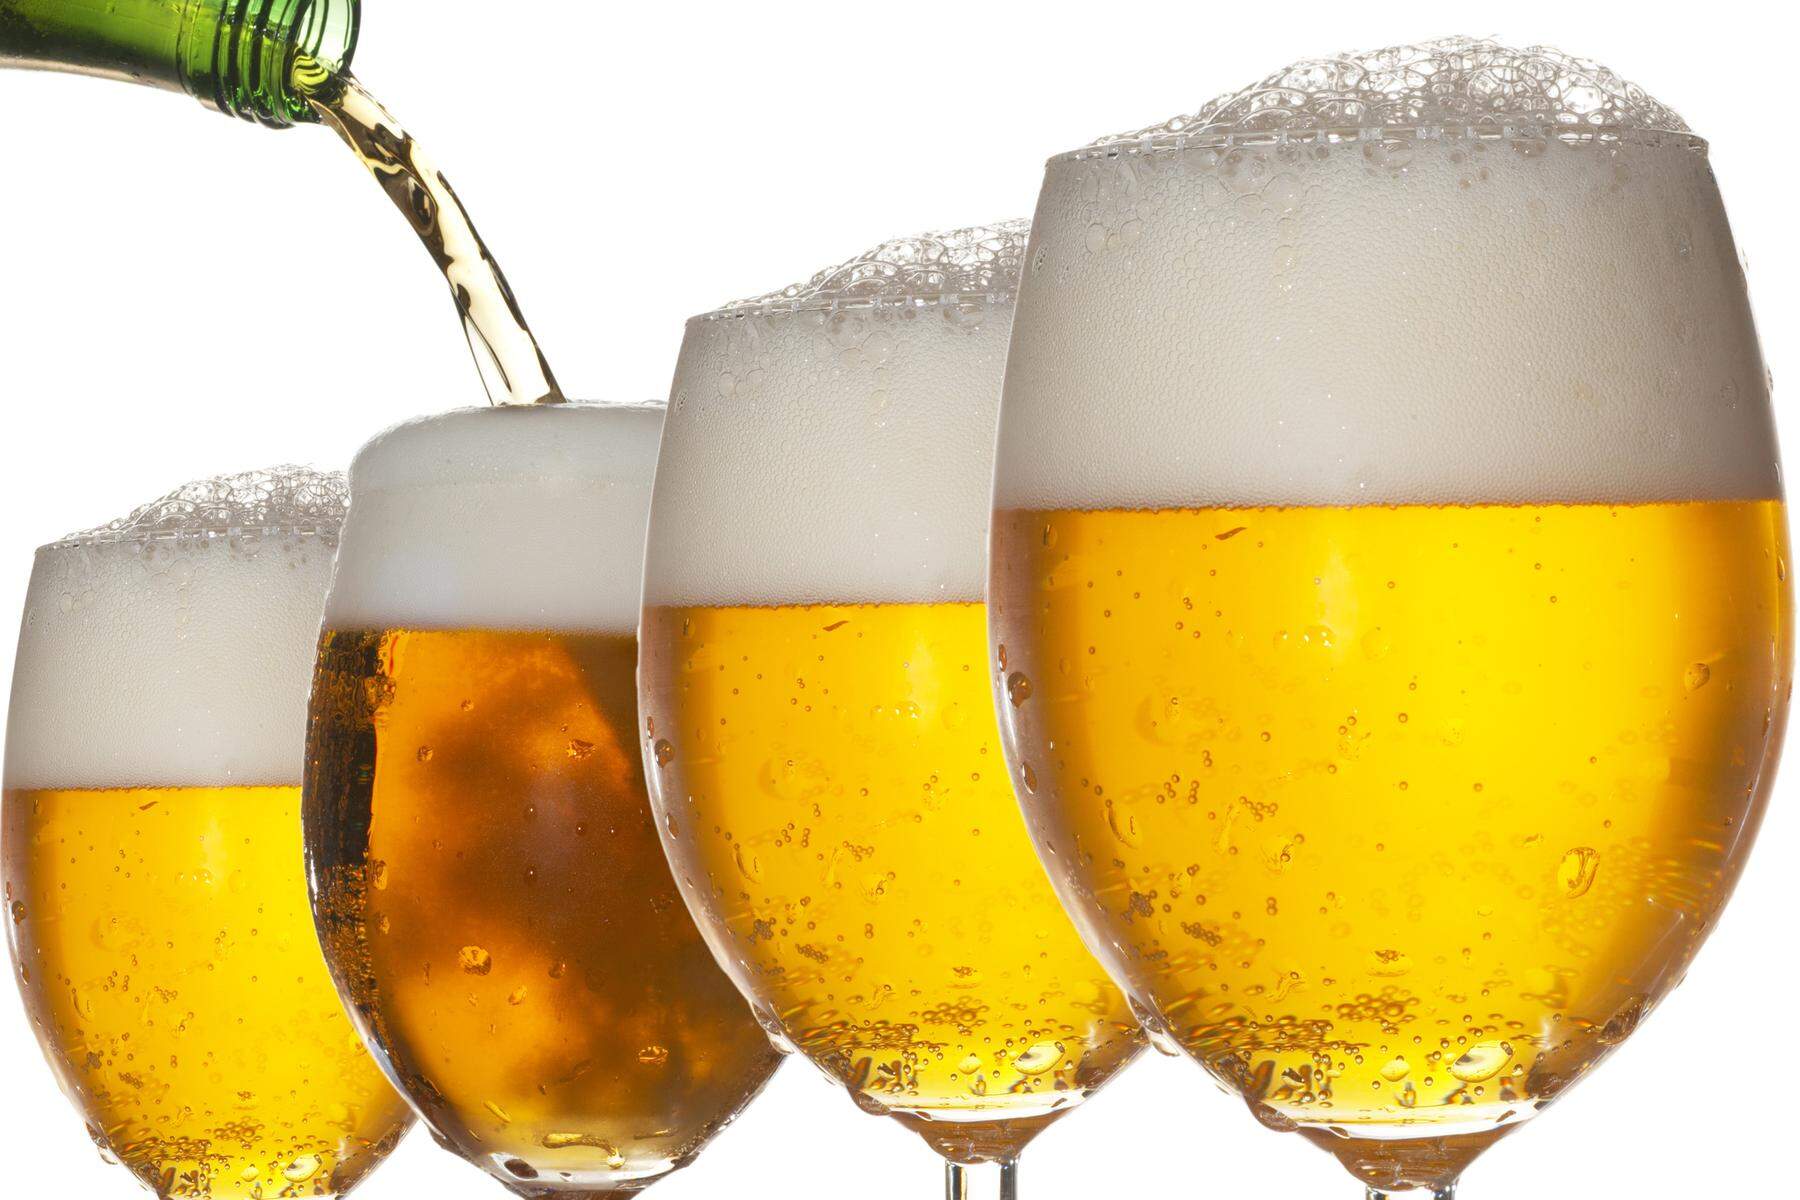 Bier-Alarm | Es wird weniger Bier getrunken:  Hopfenüberangebot und sinkende Preise